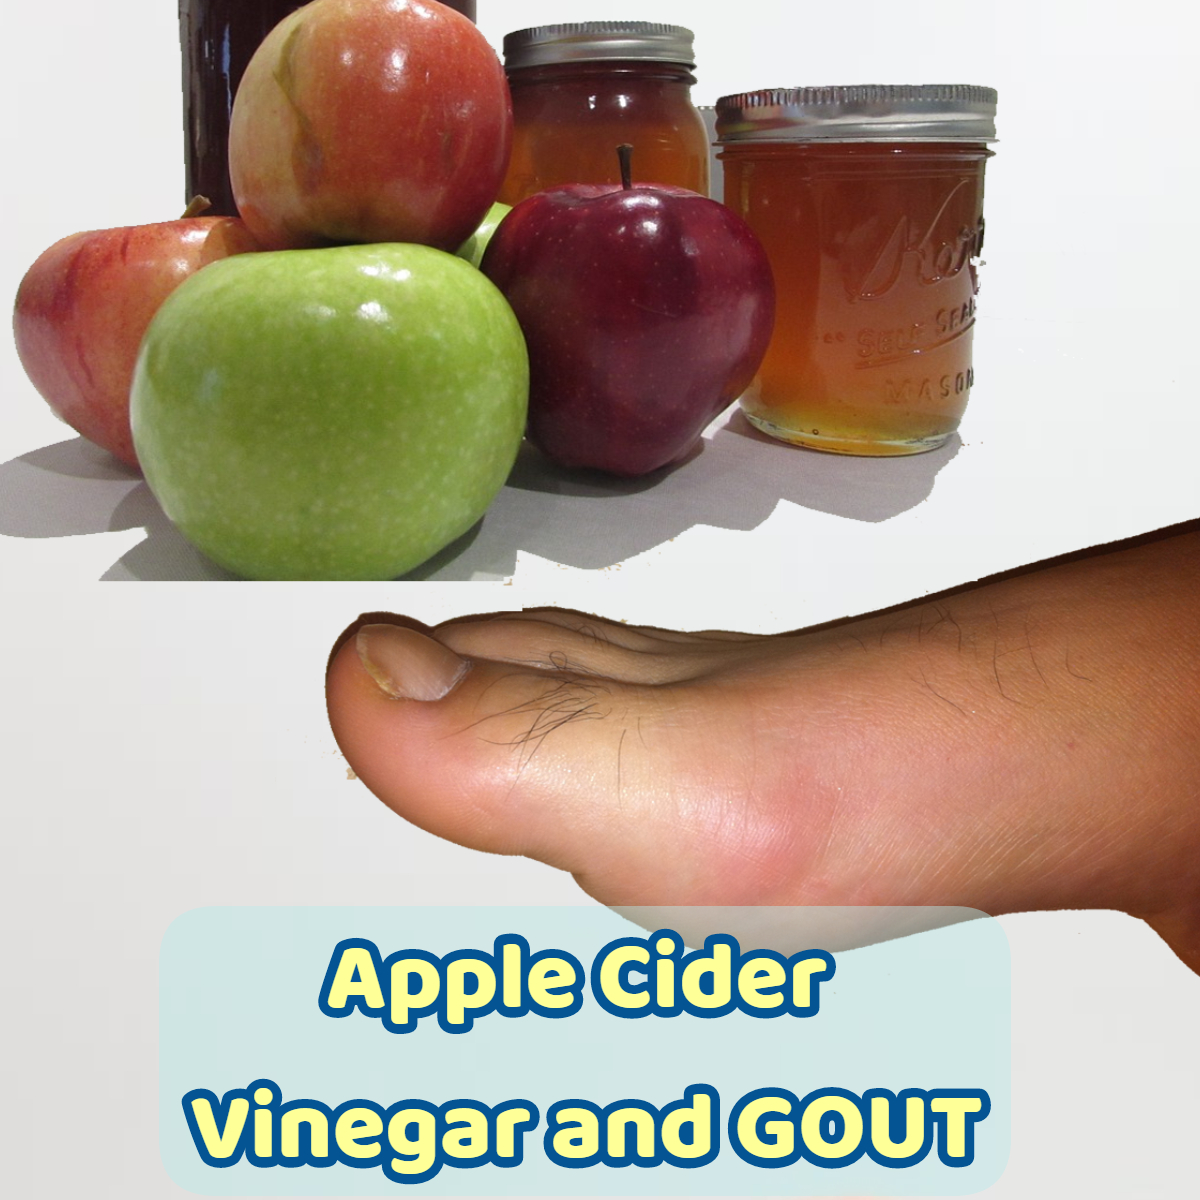 apple cider vinegar and gout